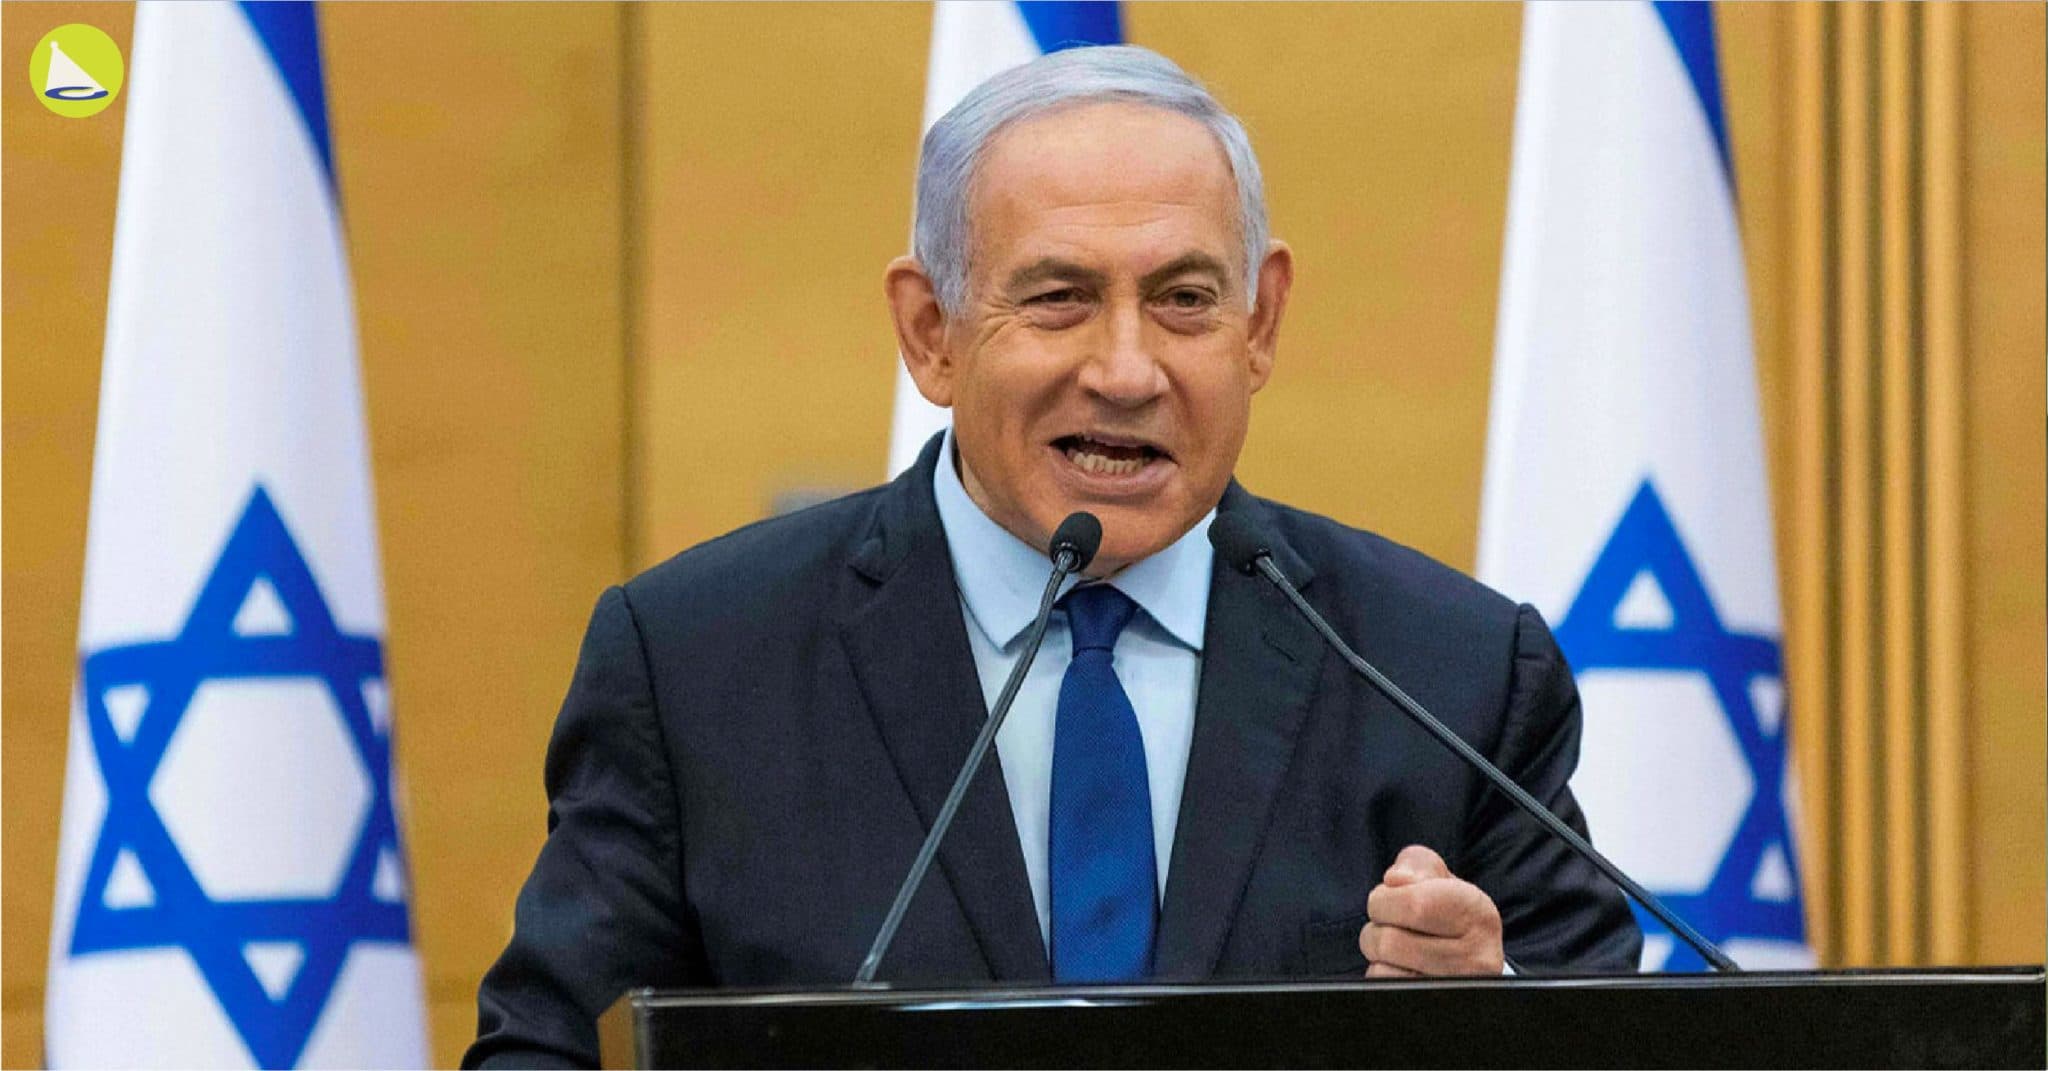 Benjamin Netanyahu: ผู้นำที่พาอิสราเอลรอดพ้นจาก Covid-19 ได้เป็นชาติแรก